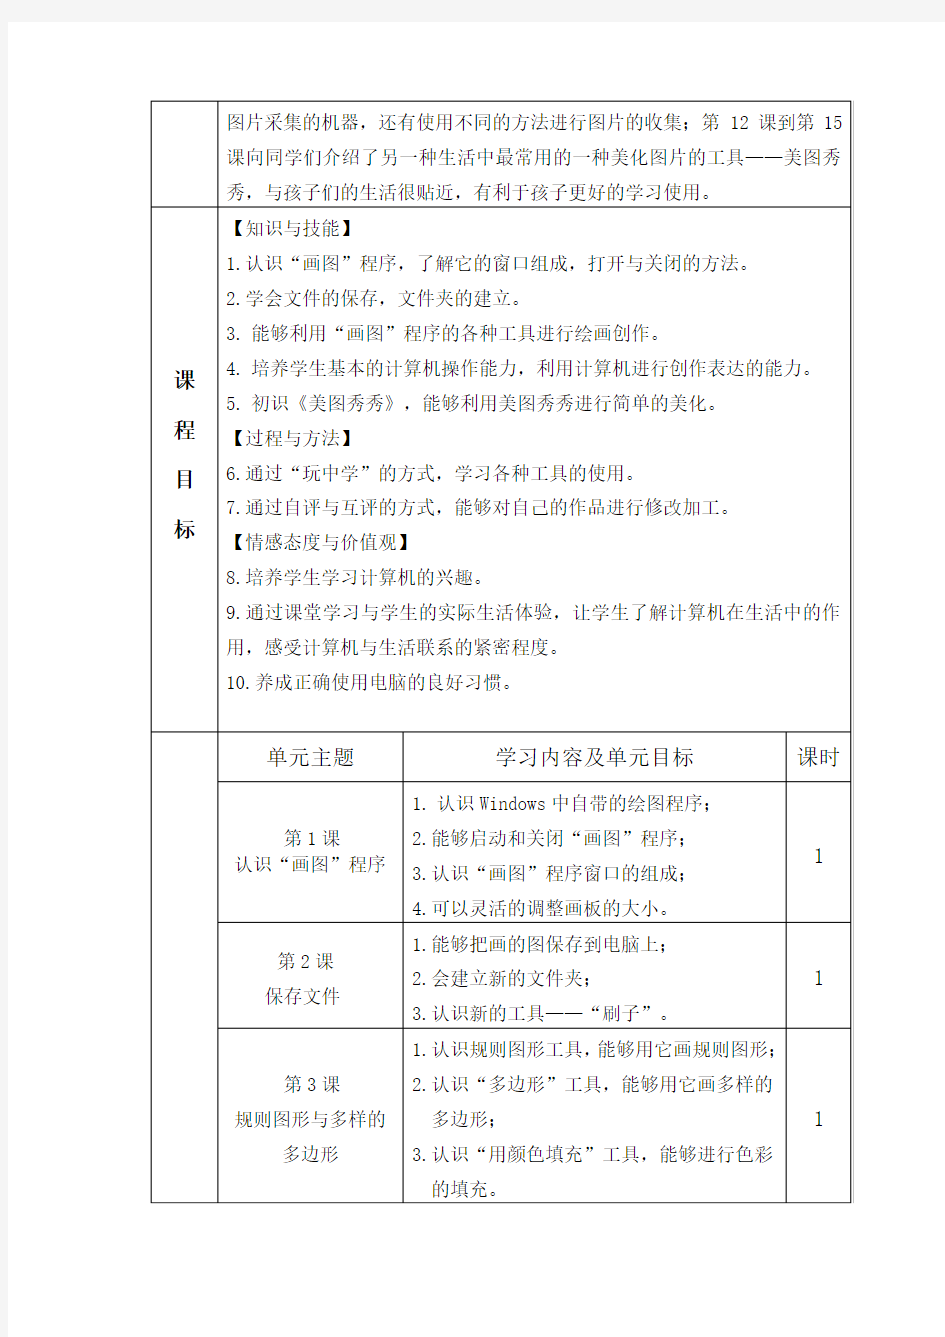 小学四年级信息技术下册课程纲要(河科版)